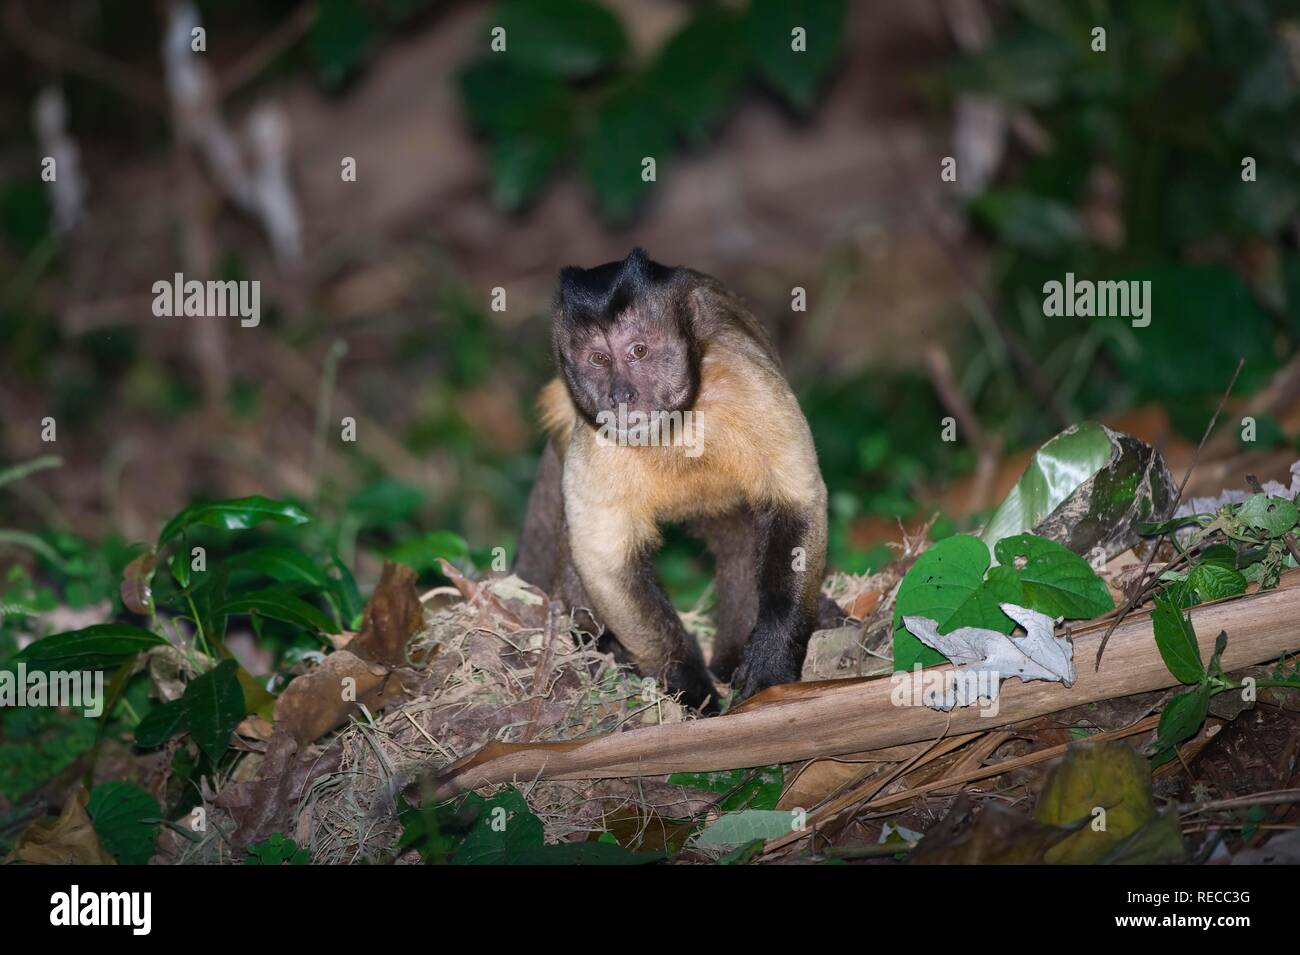 Tufted Capuchin or Brown Capuchin or Black-capped Capuchin (Cebus apella), Alta Floresta, Mato Grosso, Brazil, South America Stock Photo